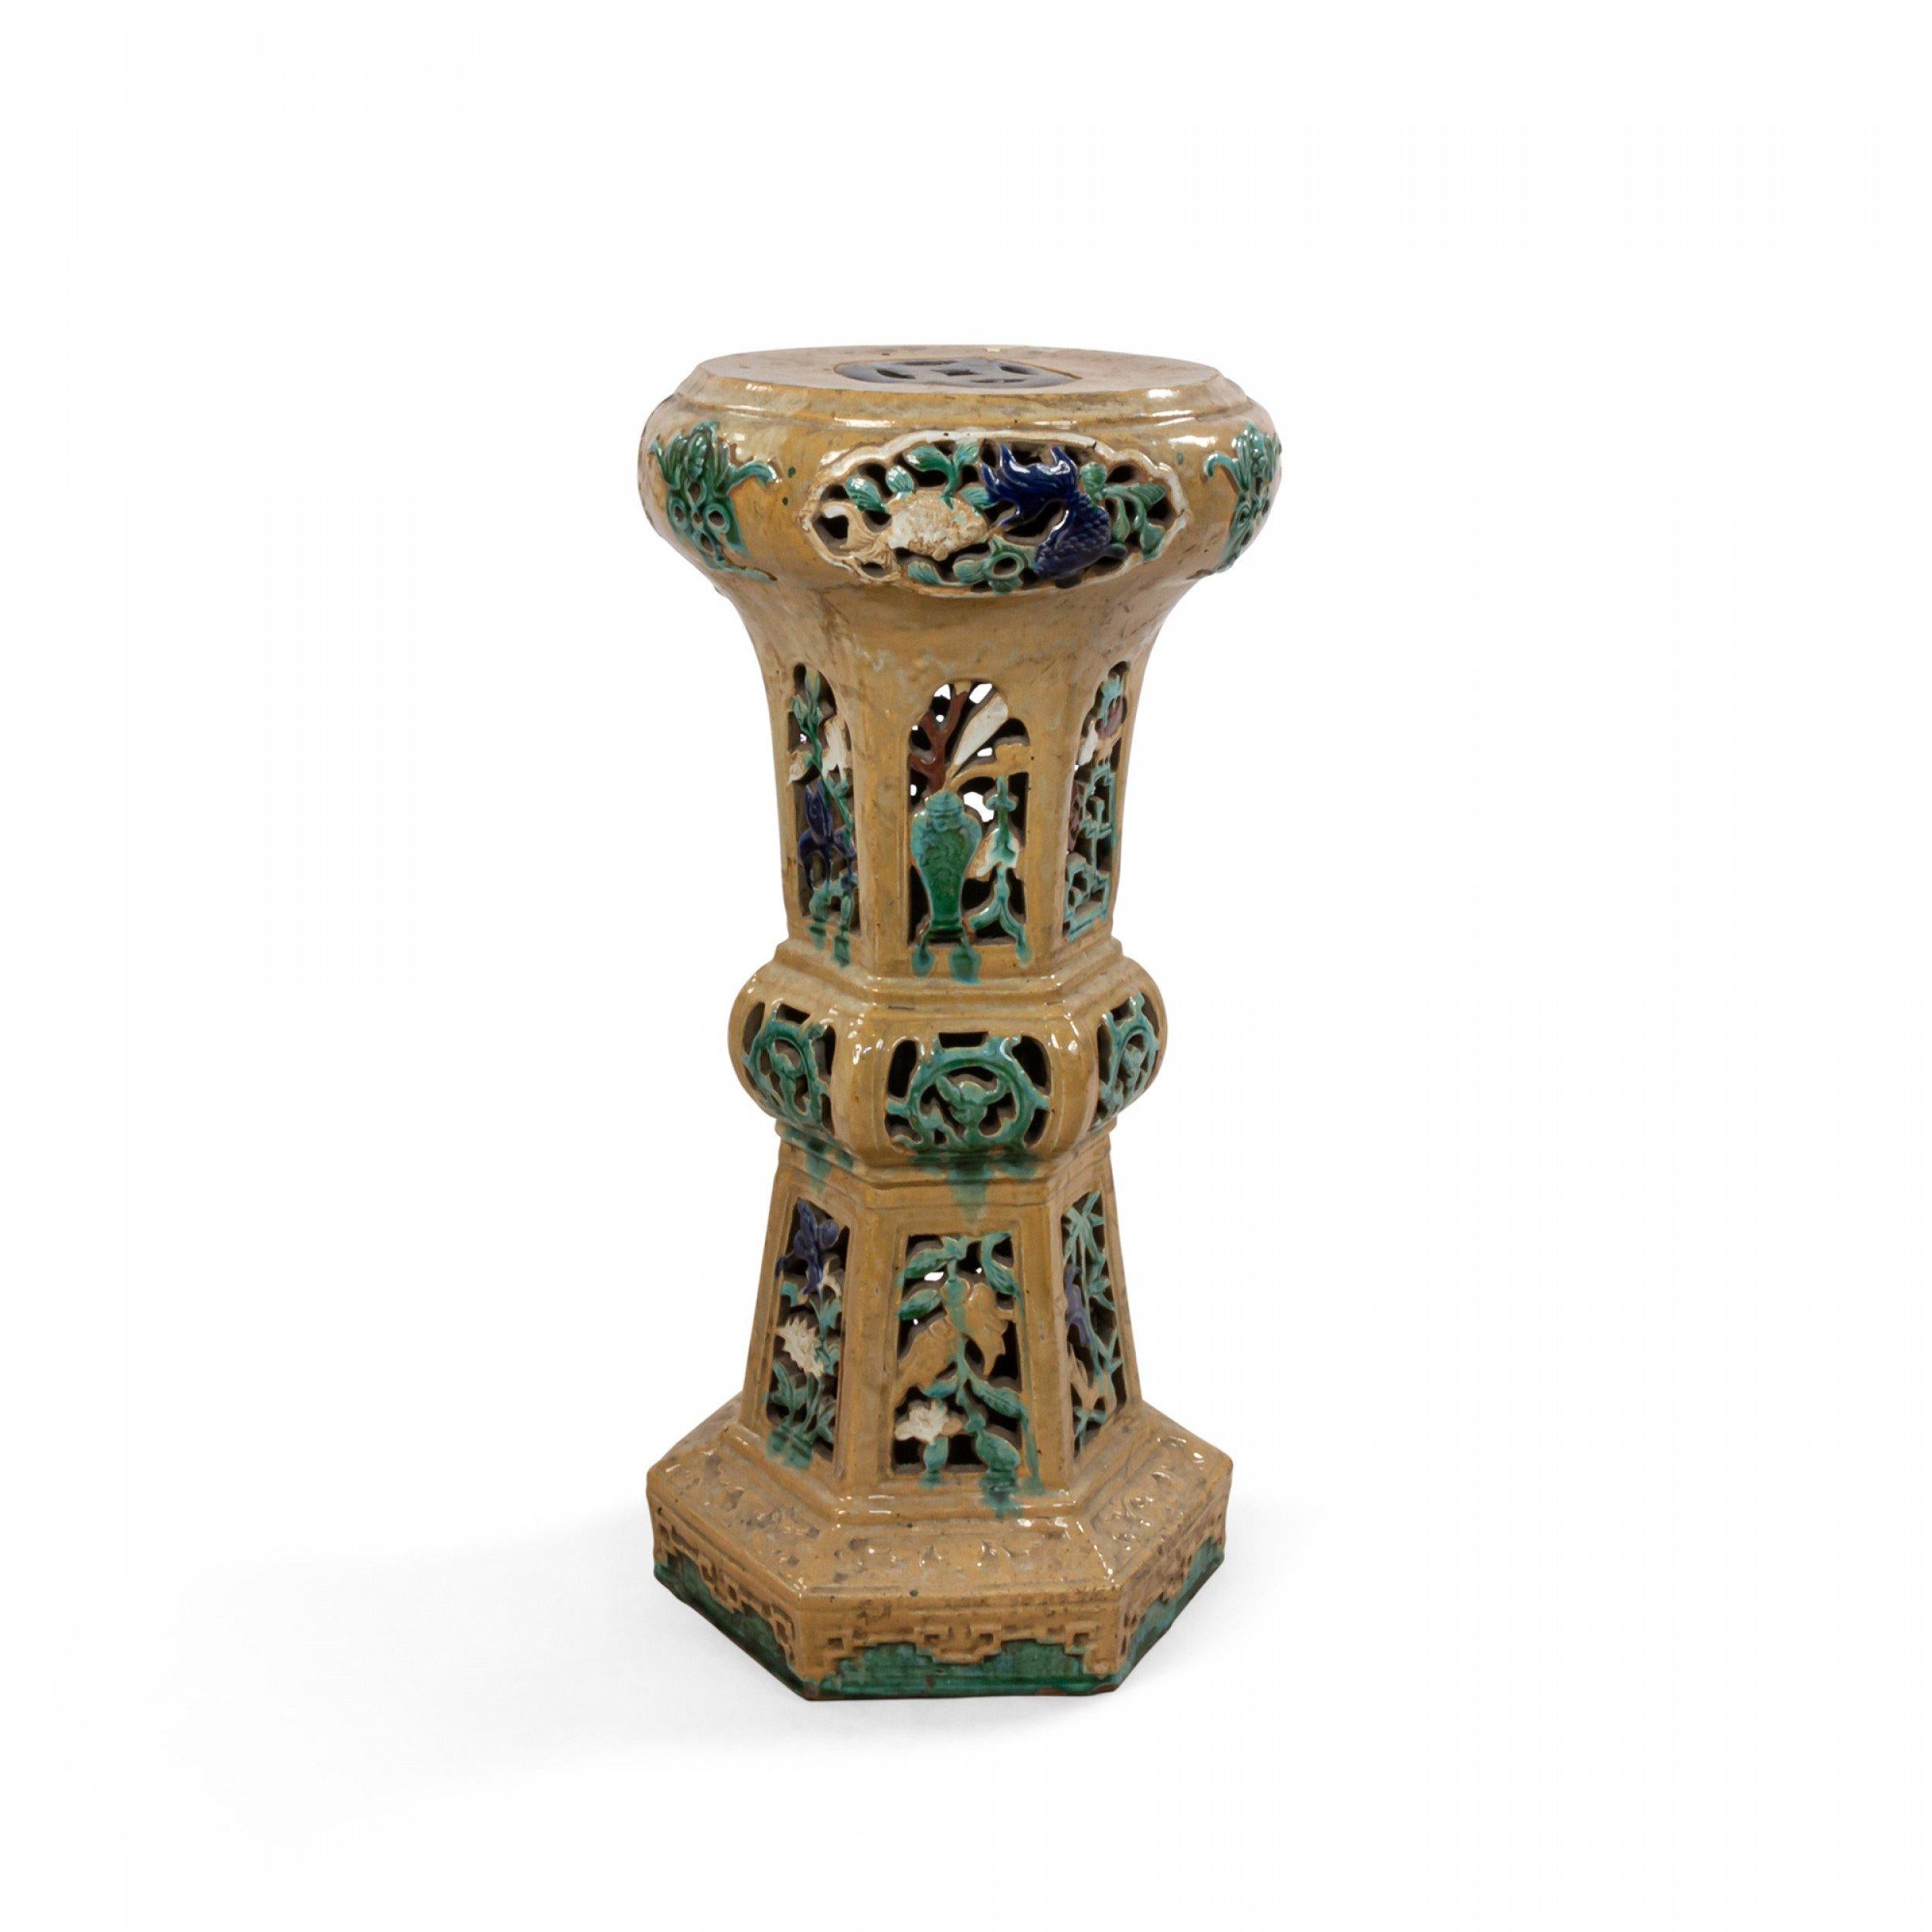 Asiatischer chinesischer Stil (19/20. Jh.), beige und aquamarinfarbenes Porzellan, filigraner Gartensitz / Sockel.
 